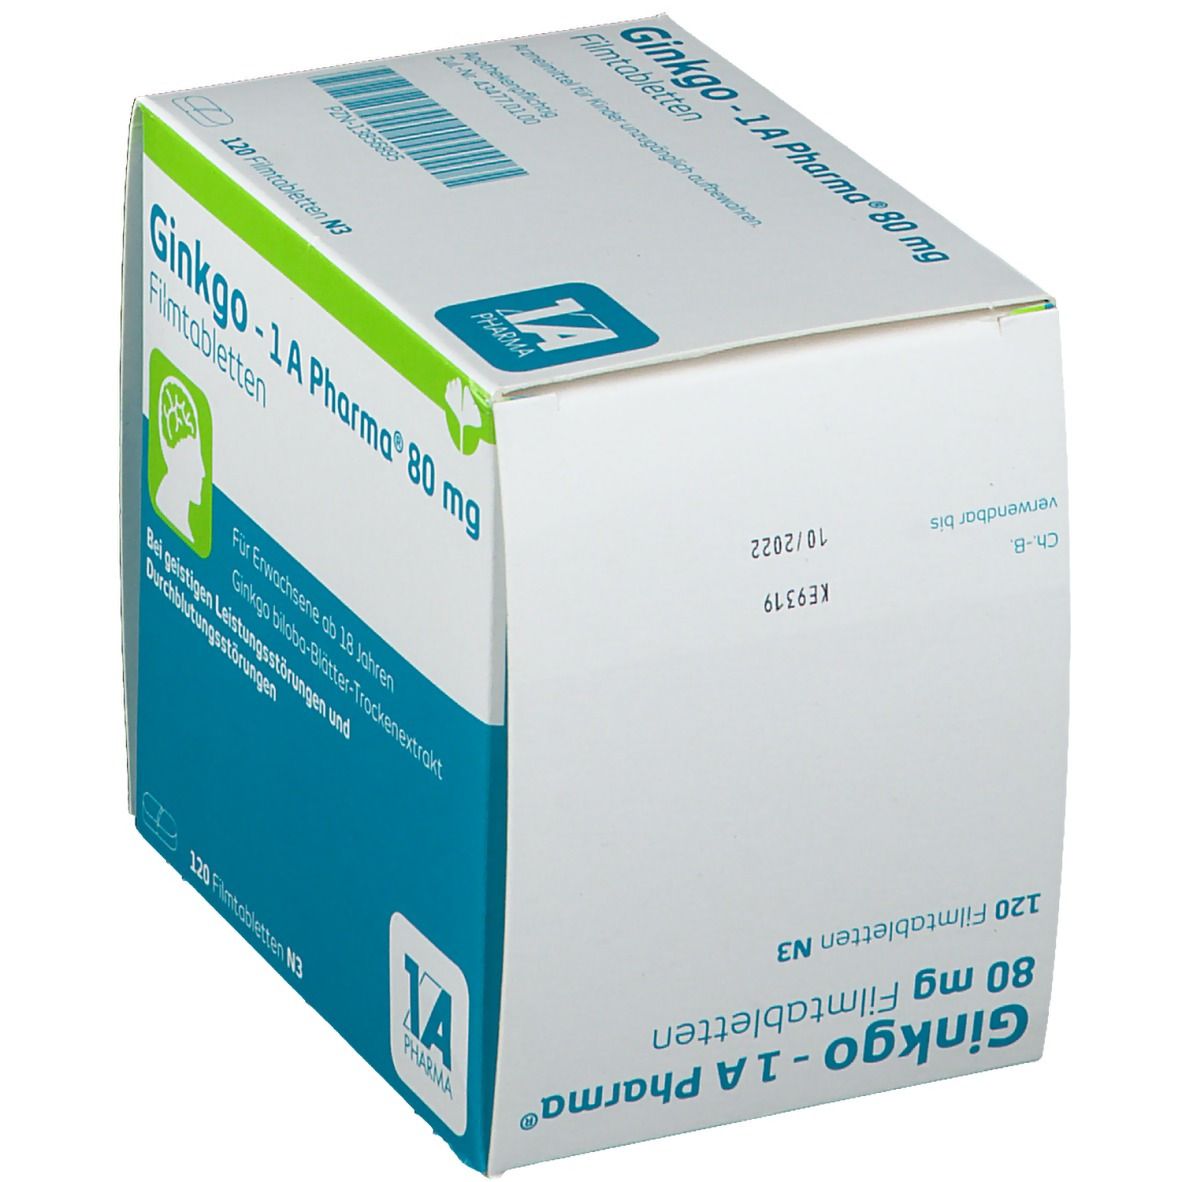 Ginkgo - 1A Pharma® 80 mg